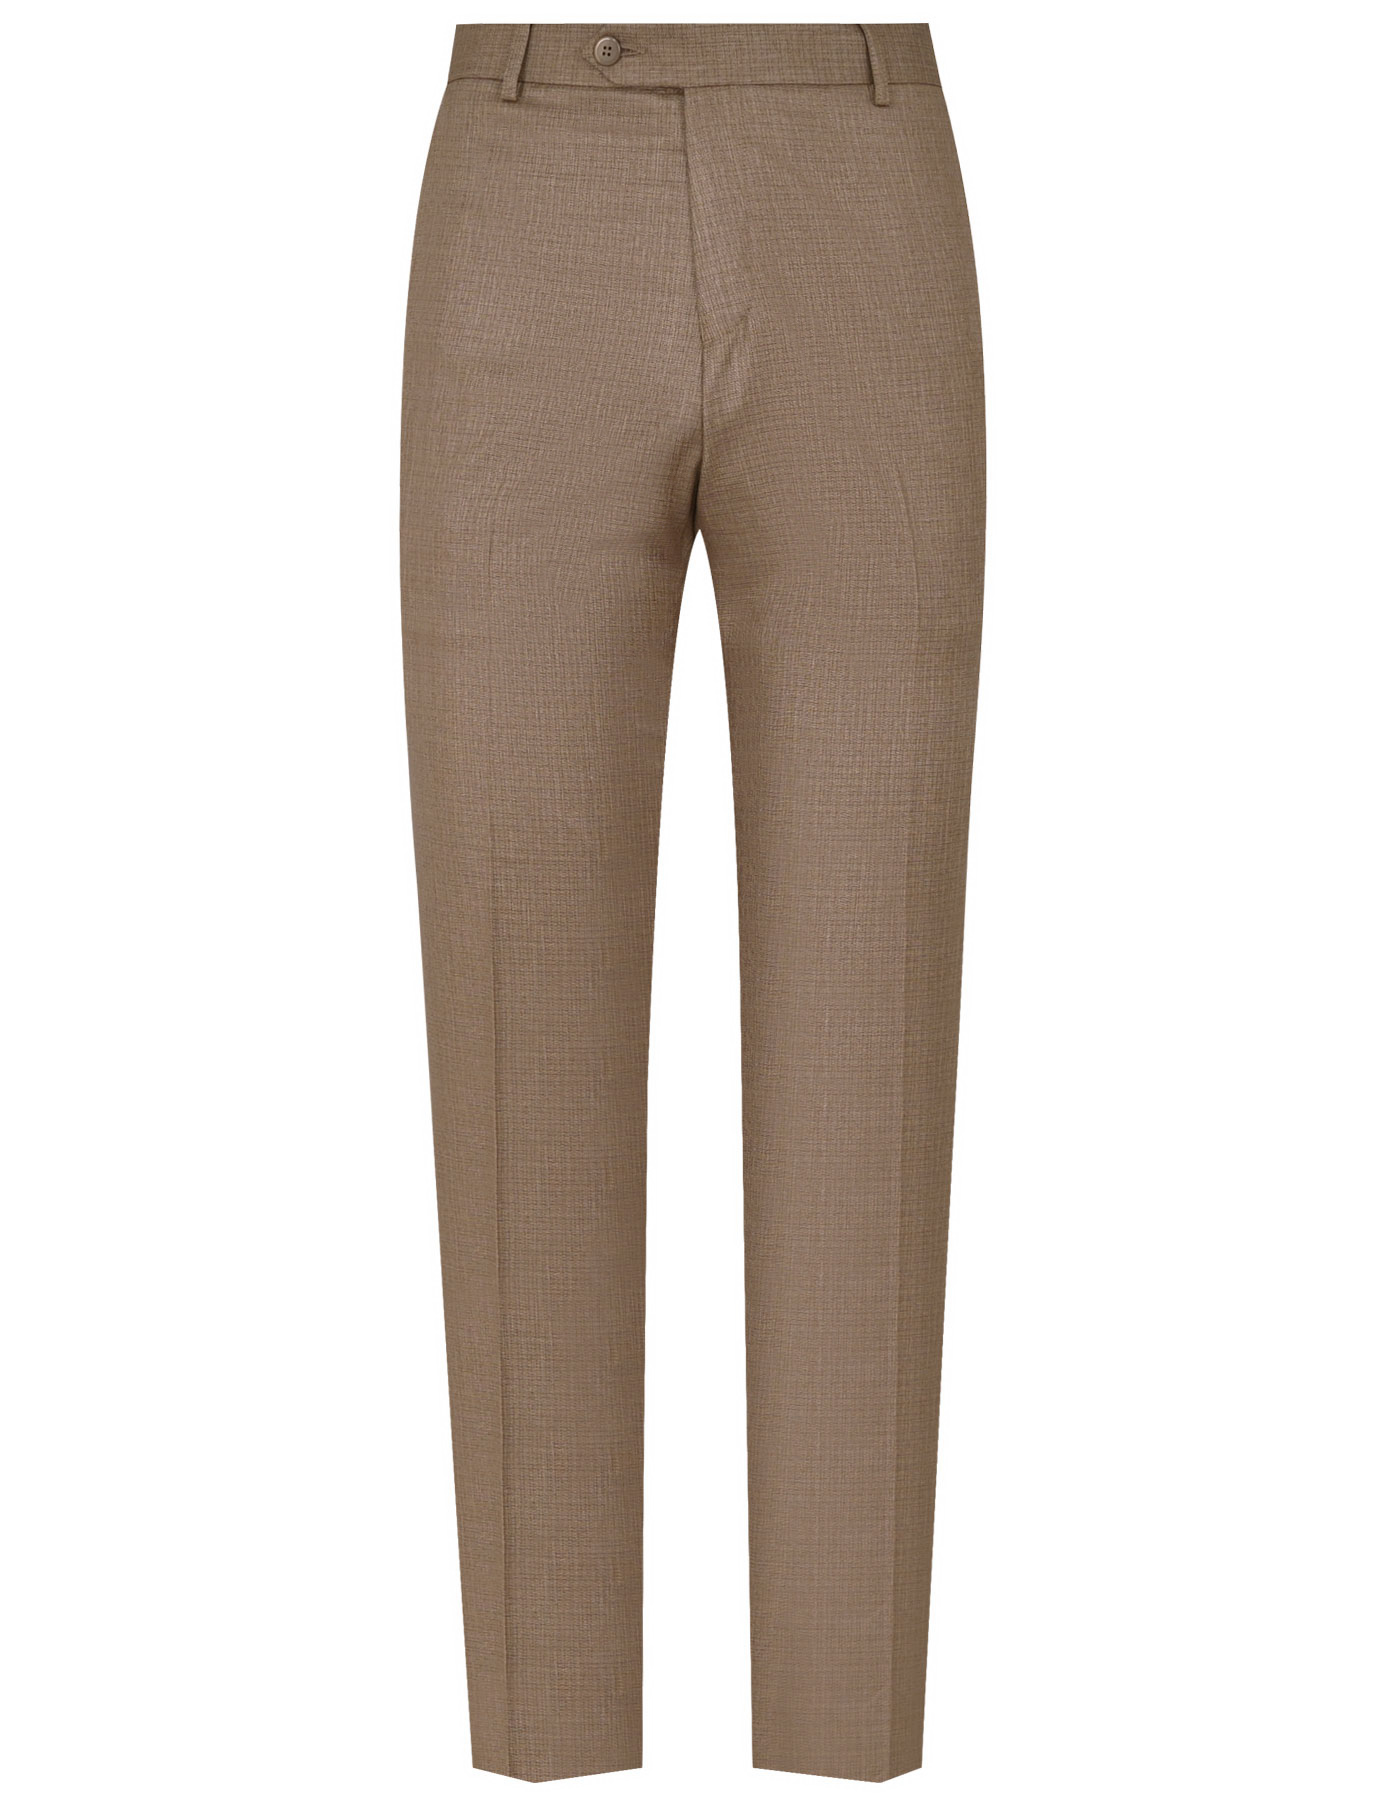 Suit D Khaki ST1910-1C Uniworth 2 Pcs Suit